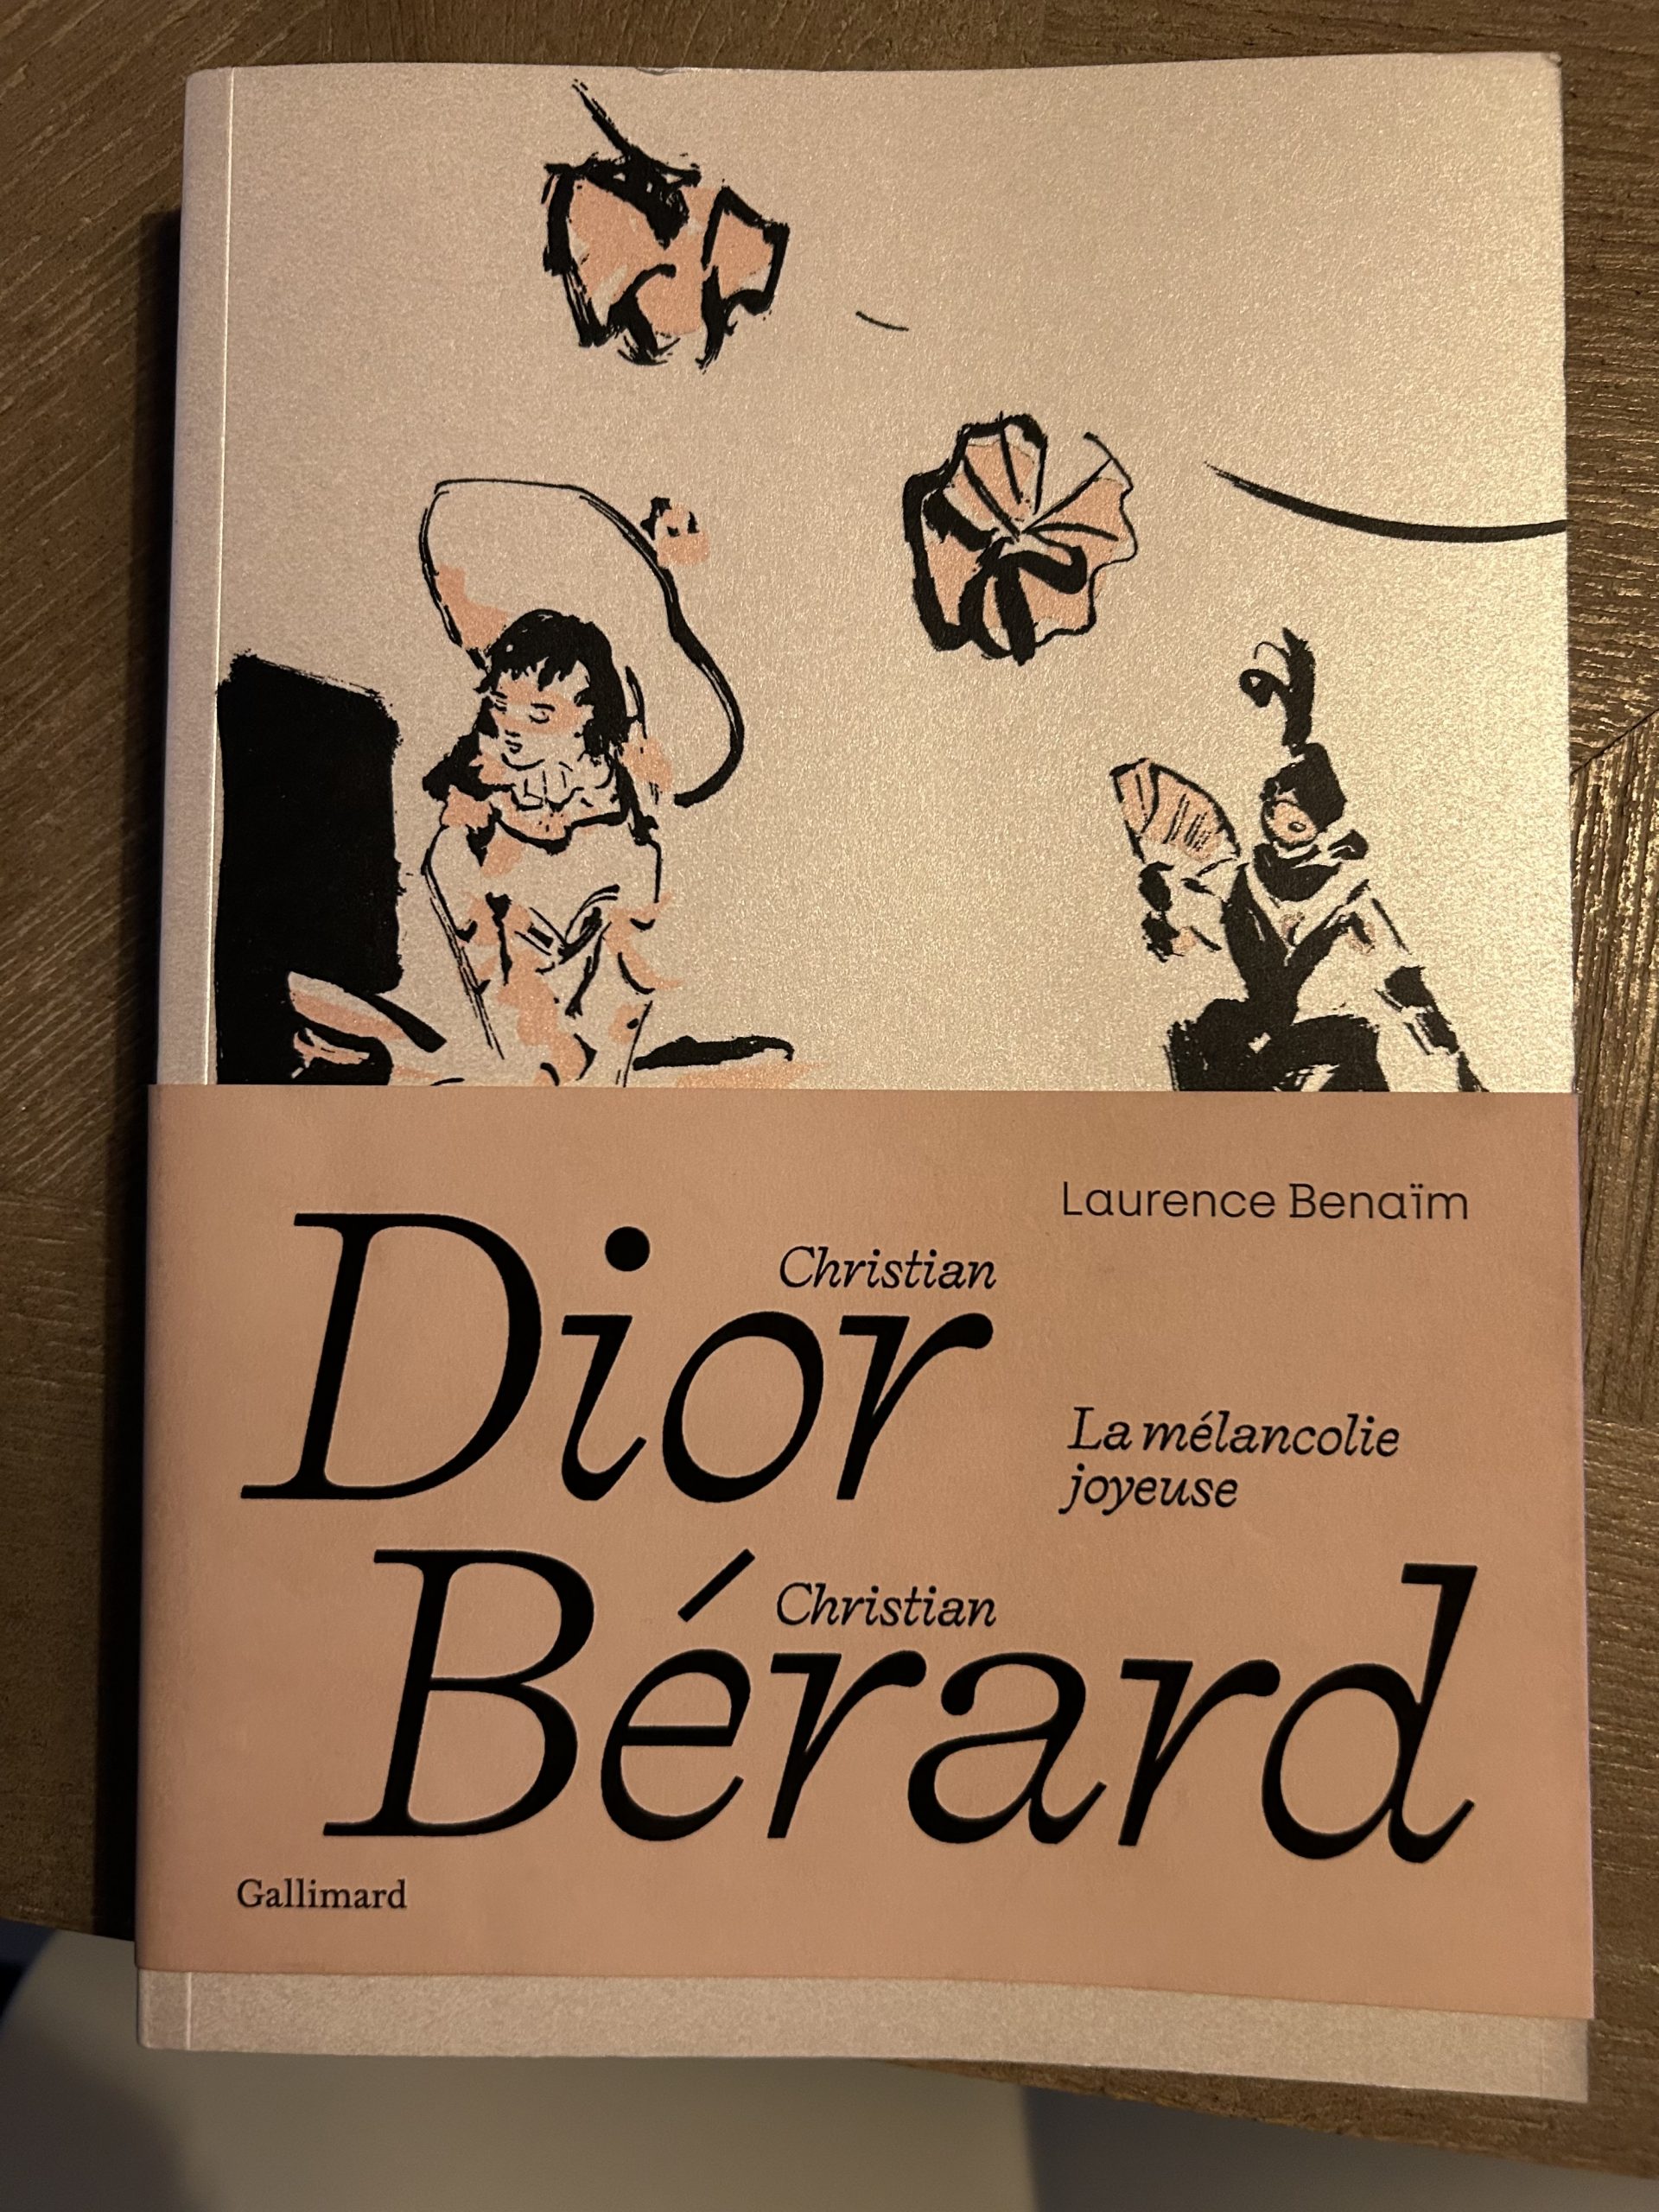 Christian Dior / Christian Bérard, destins croisés